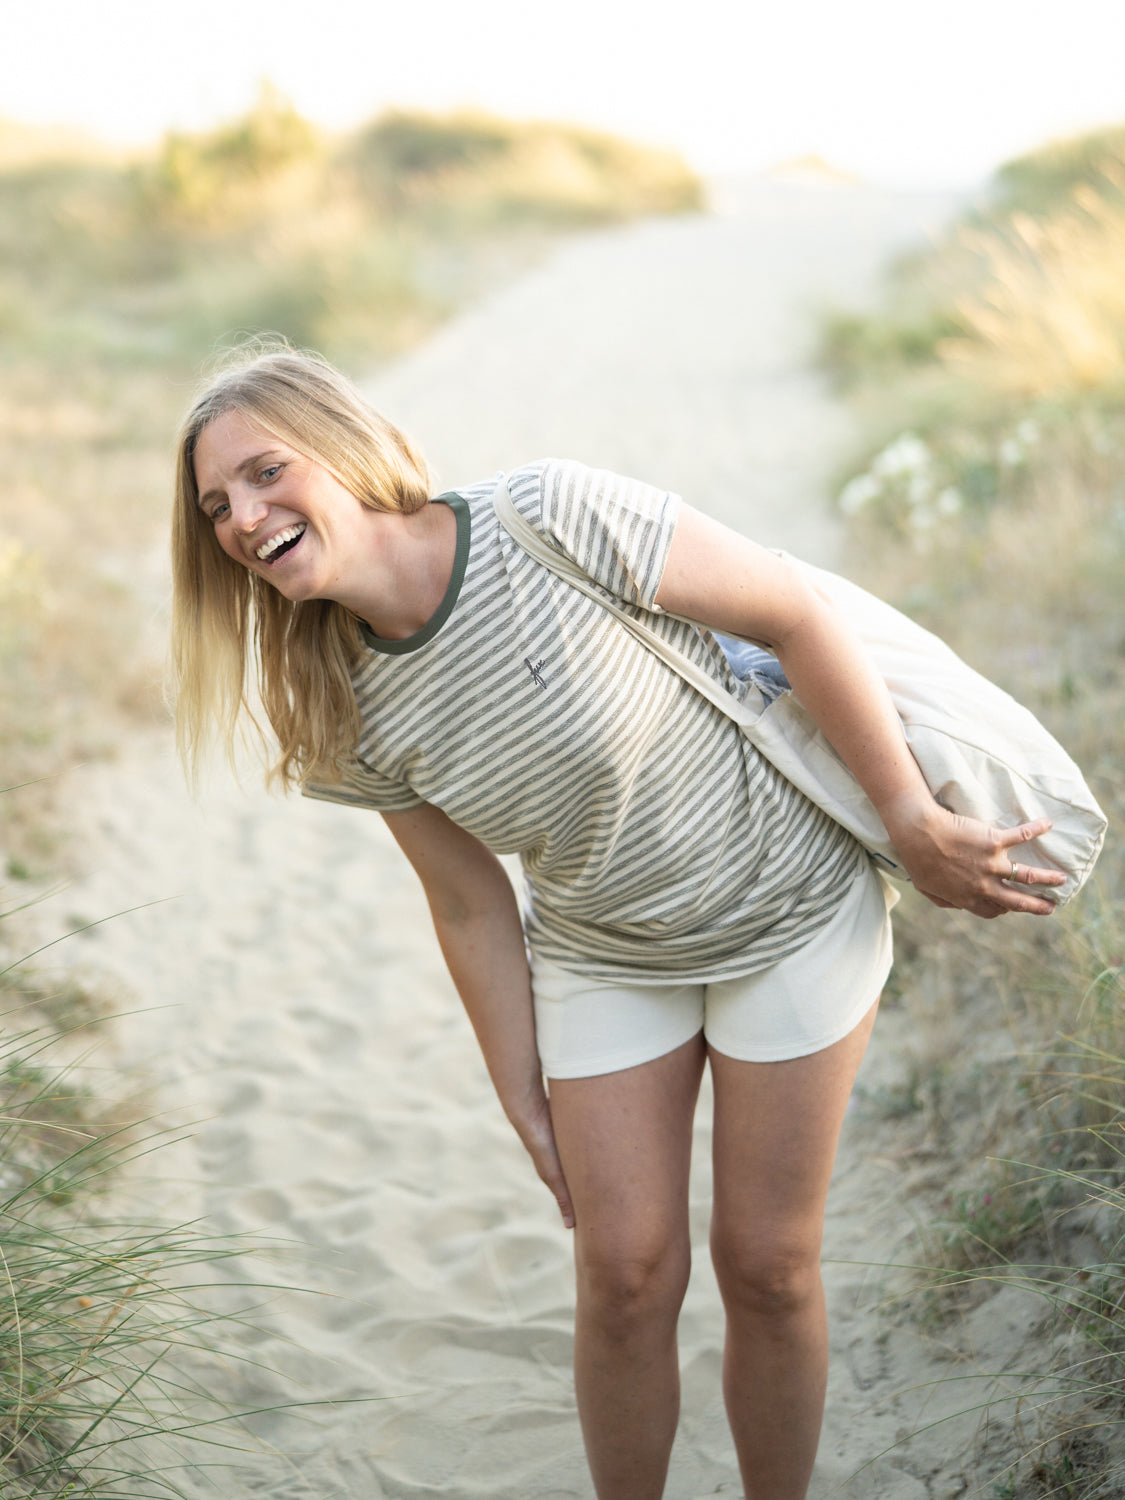 Junge, blonde Frau trägt ein FUXBAU Frauen Merida fux T-Shirt in beige grünmeliert am Strand in Portugal und lacht herzlich.